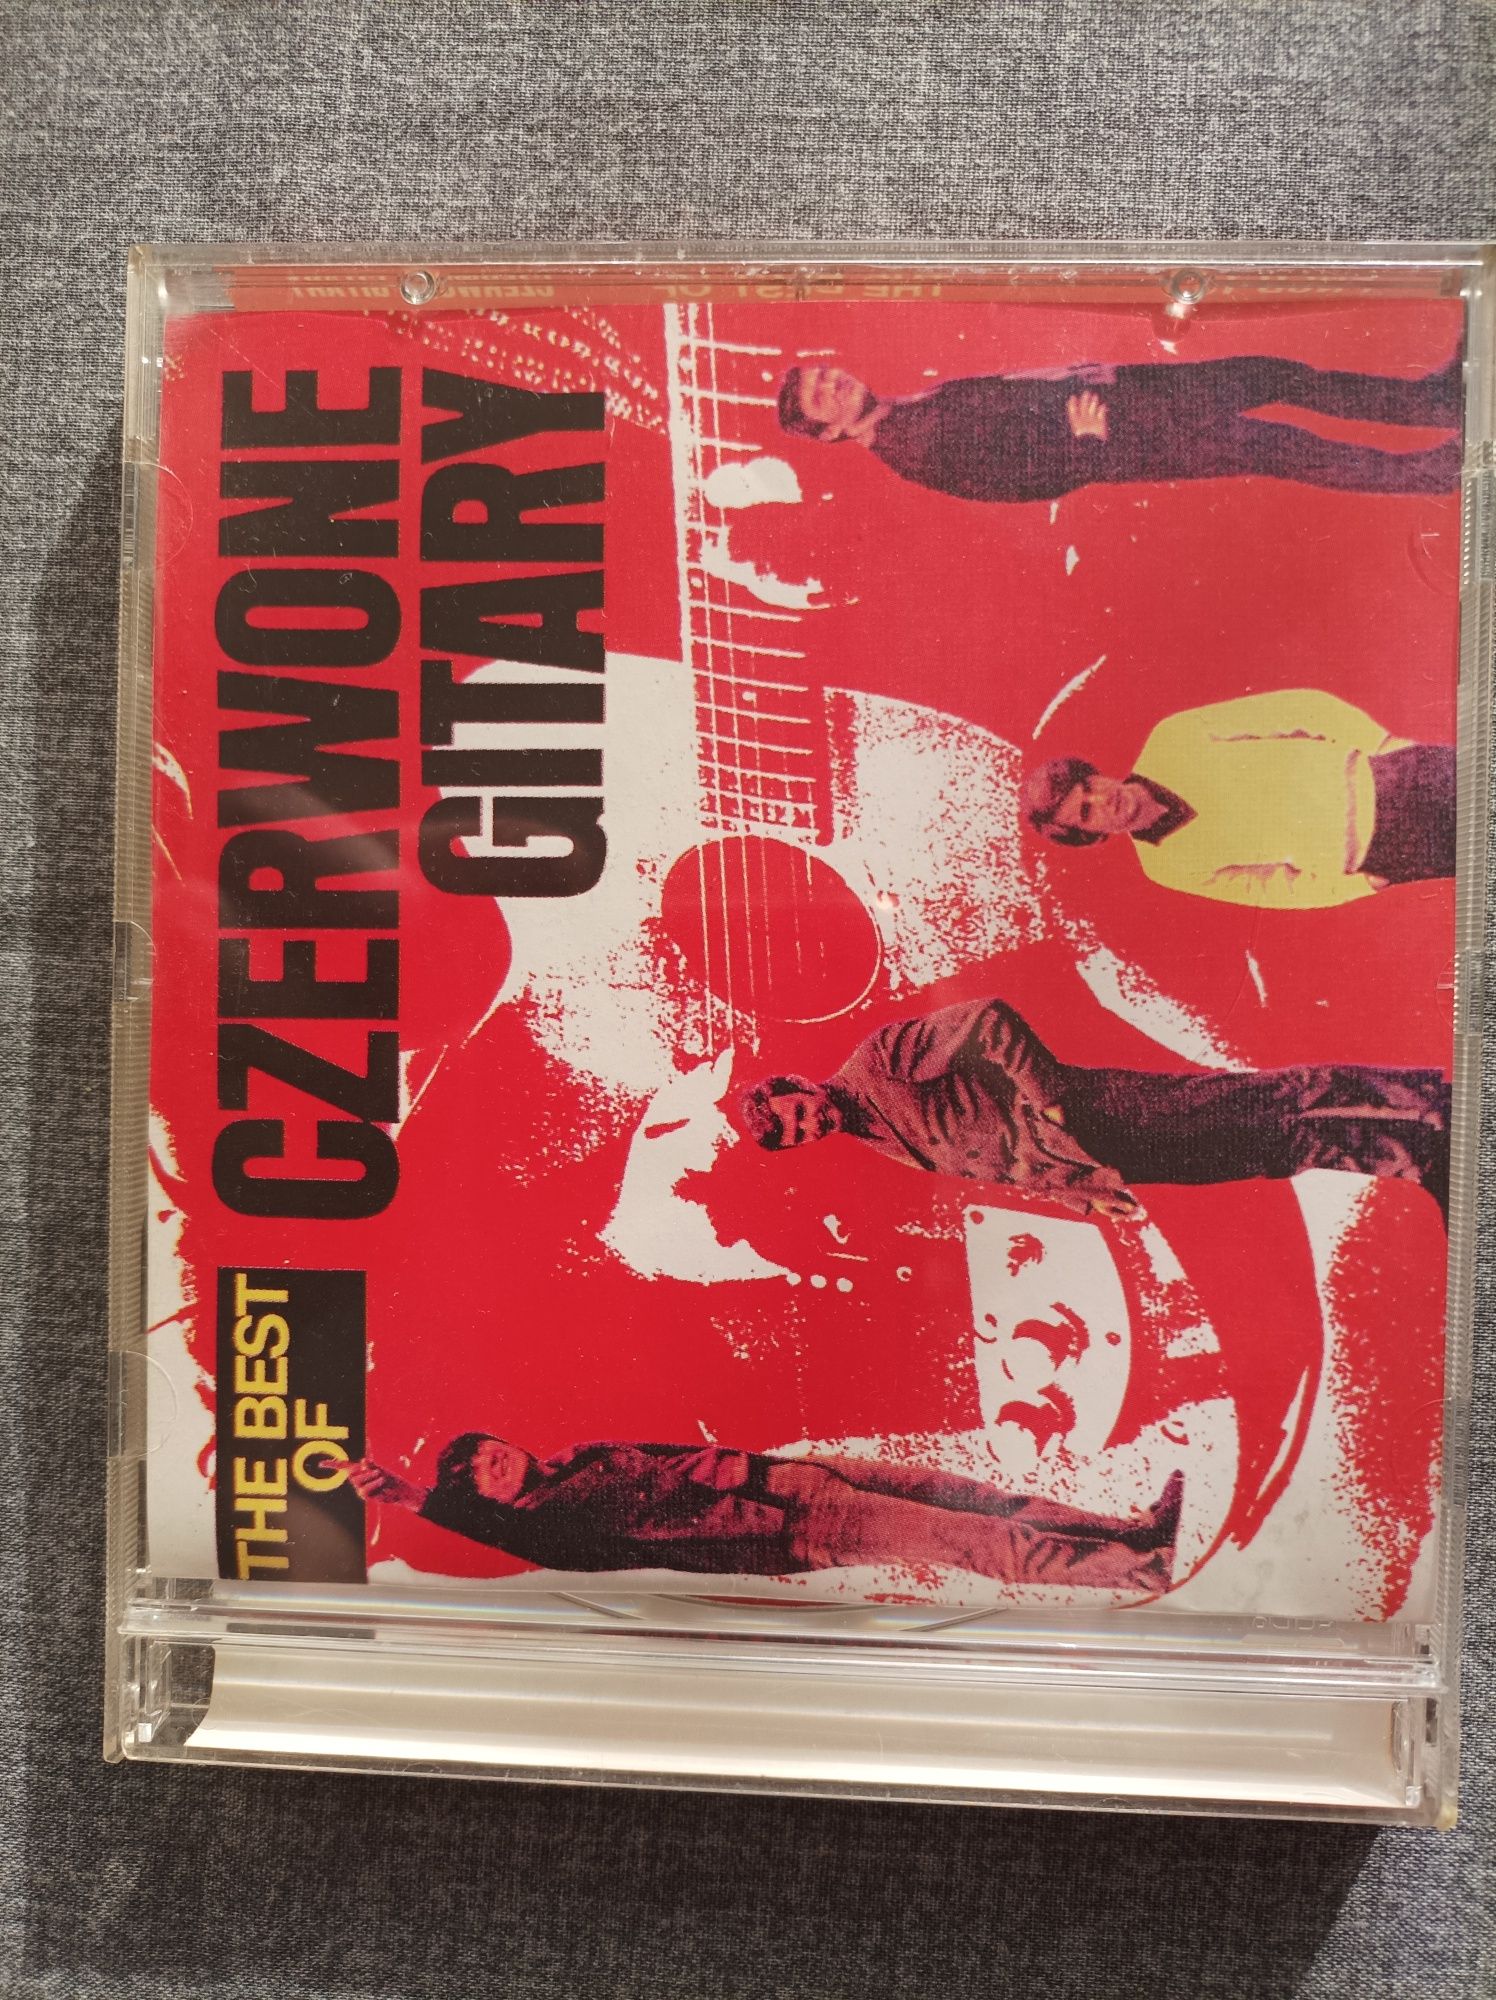 3 - Czerwone Gitary - THE BEST OF - 1 x CD